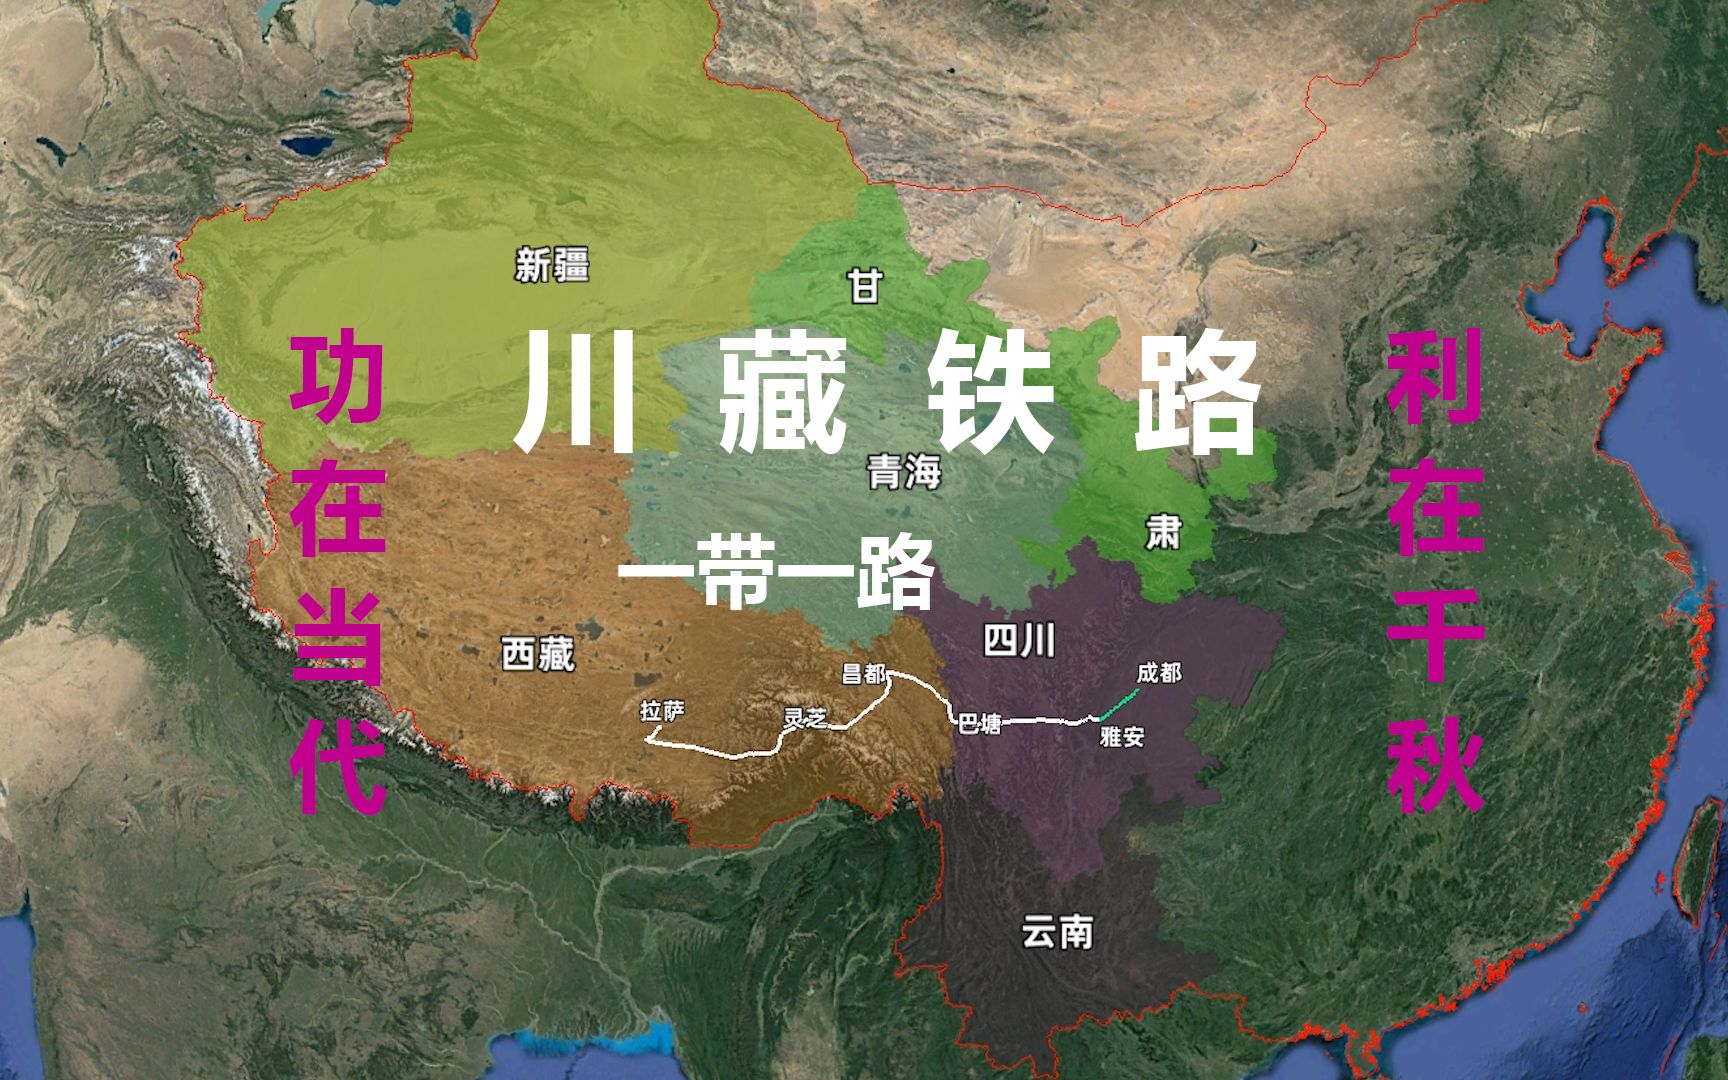 川藏铁路地图 路线图图片